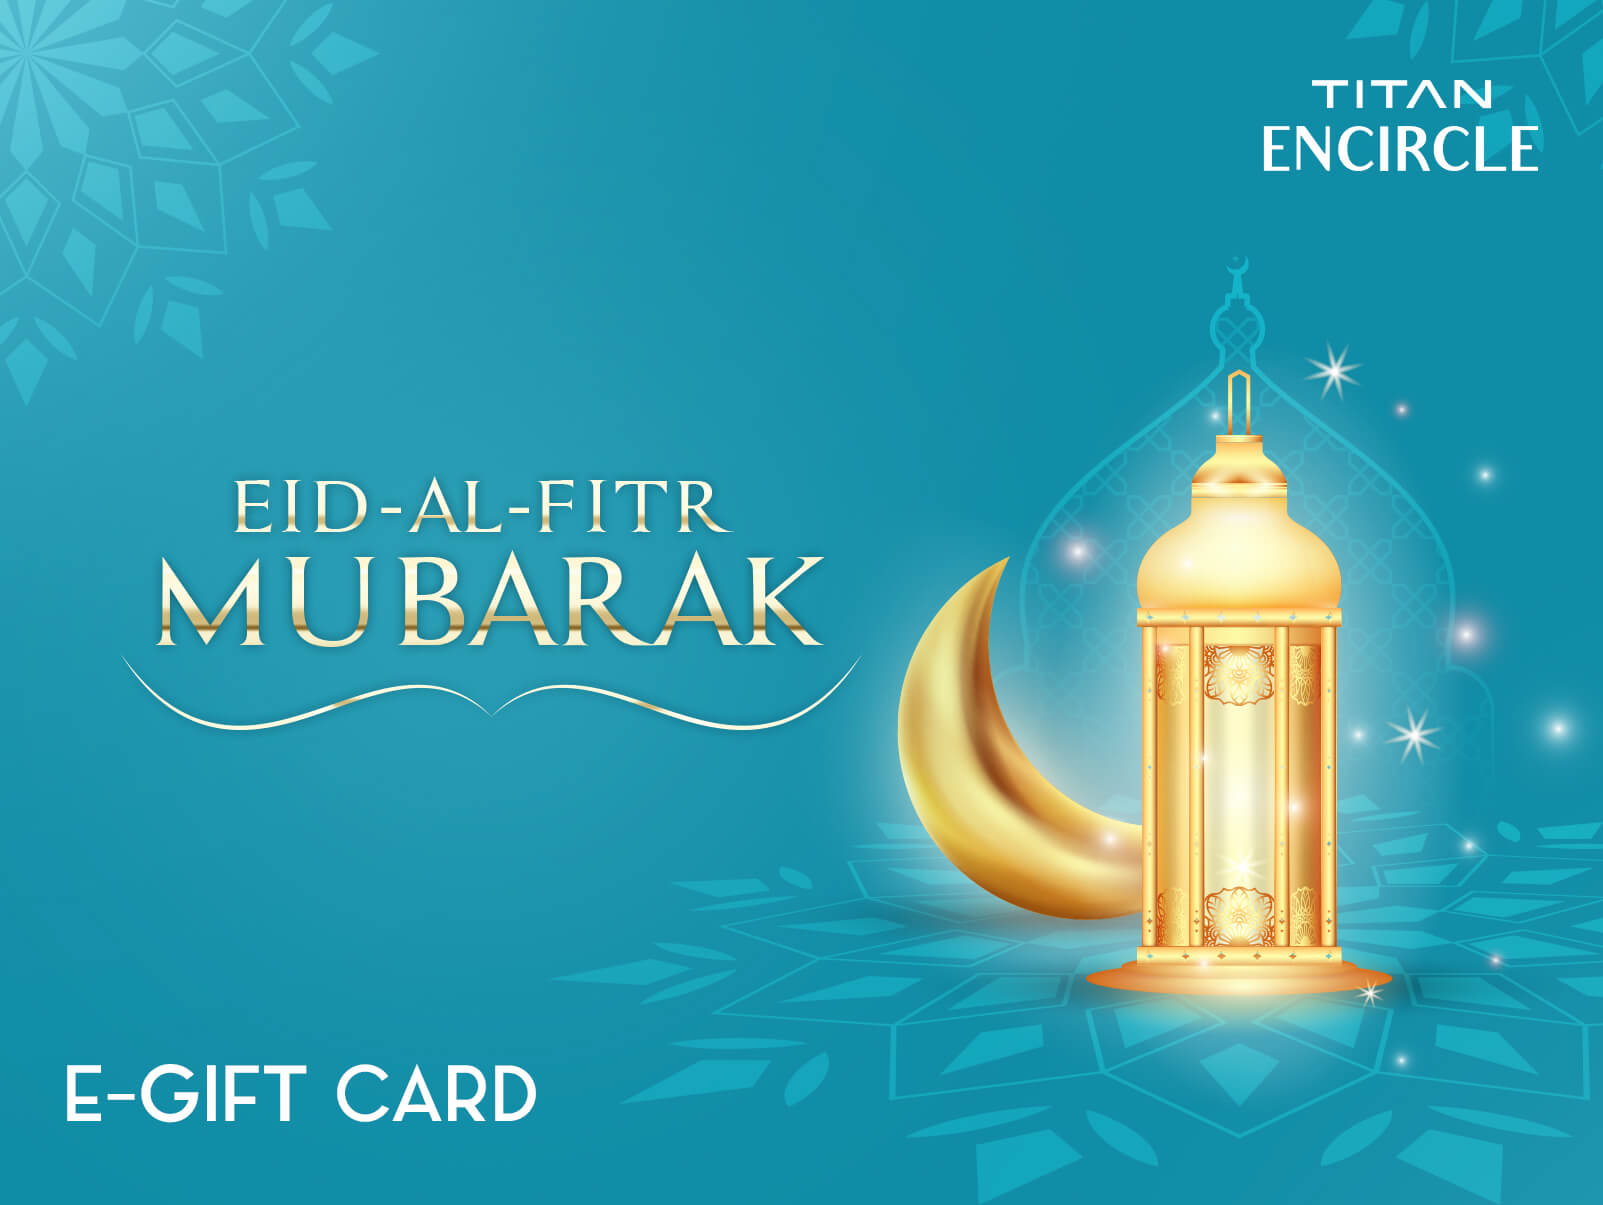 Eid Ul Fitr gift card